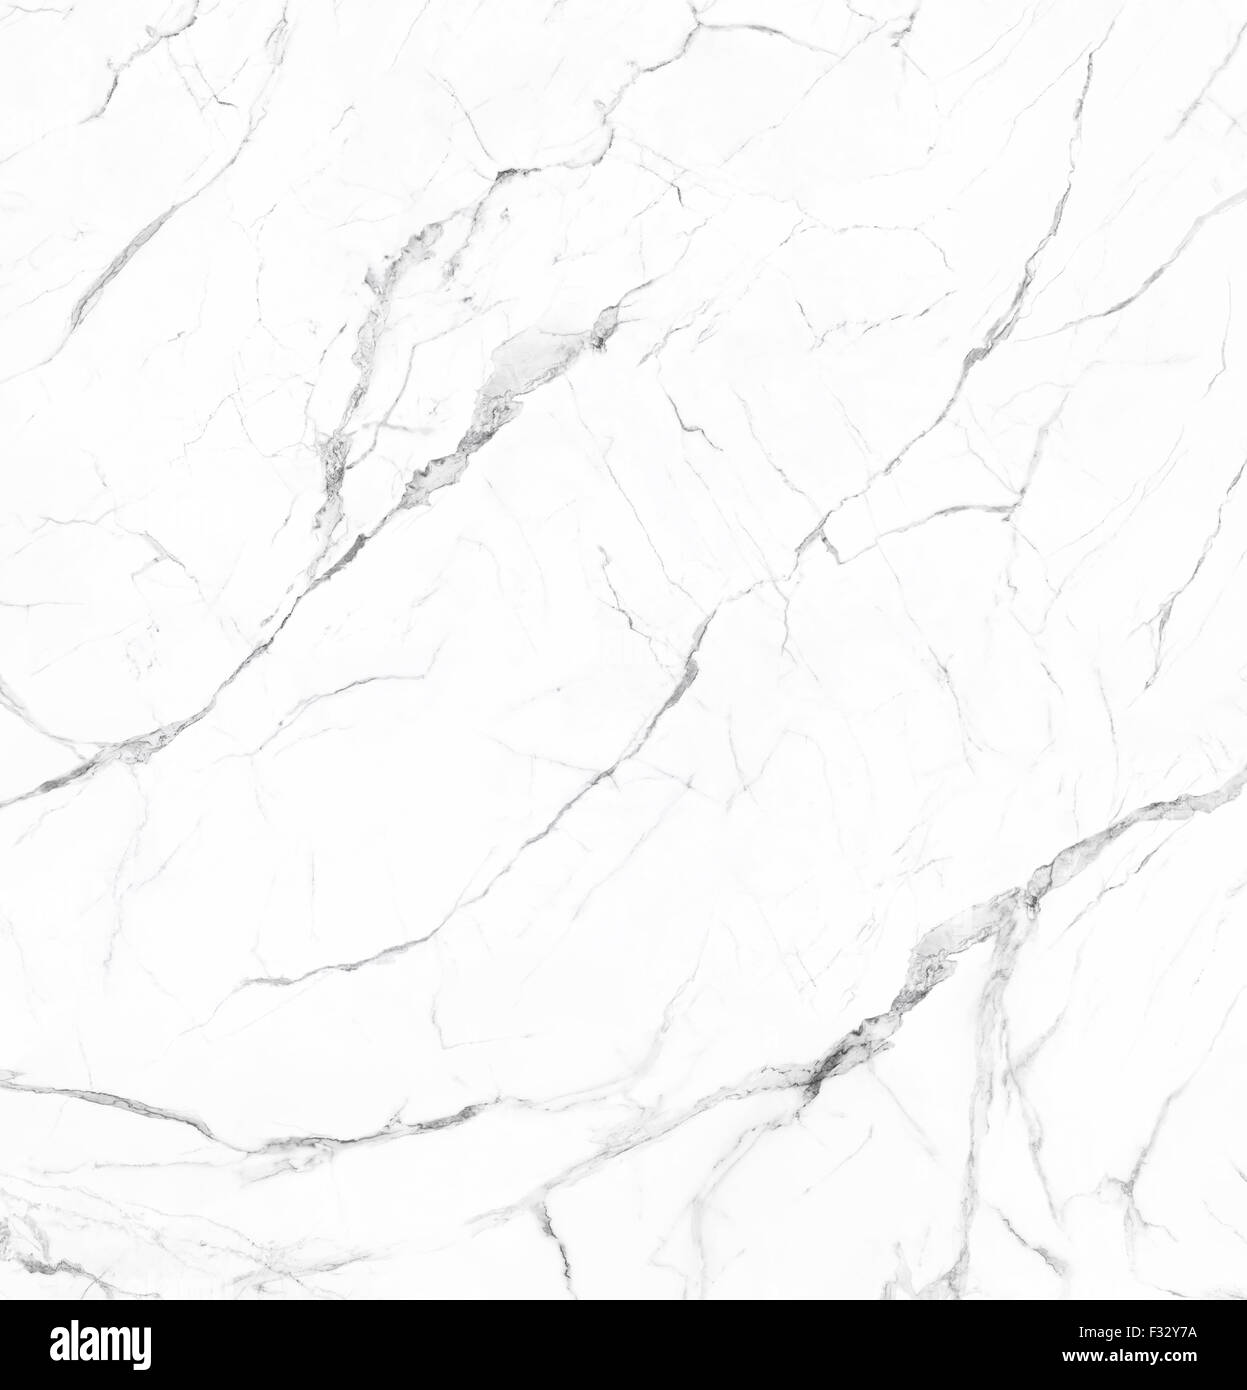 Des veines de marbre blanc avec la pierre naturelle texture background Banque D'Images